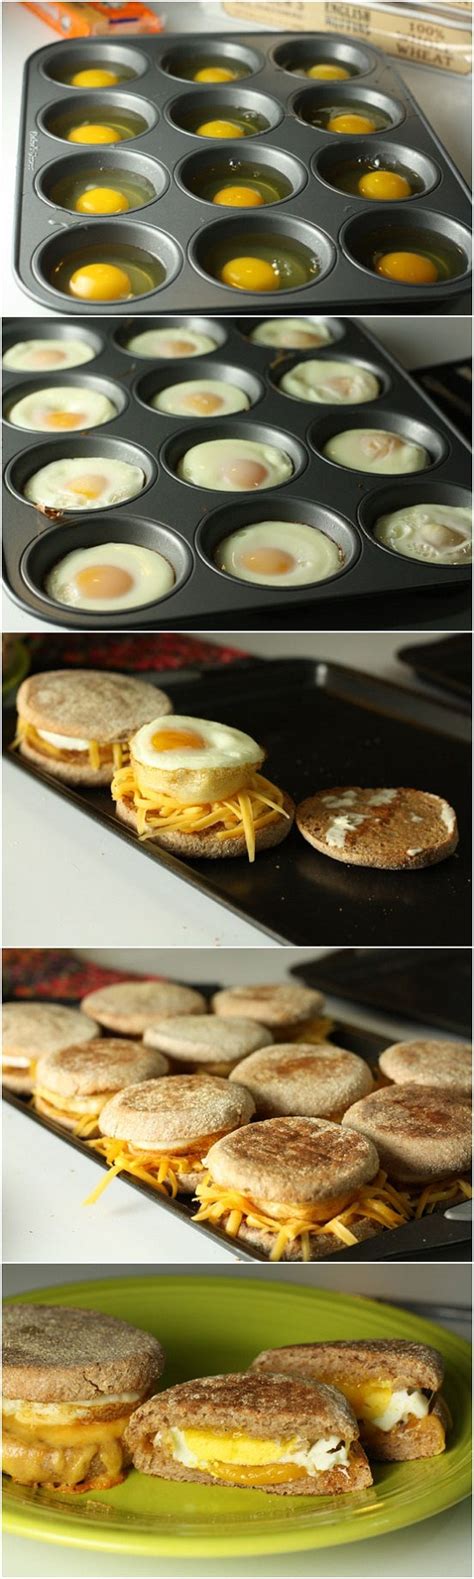 delicious breakfast sandwiches recipe quick easy recipes